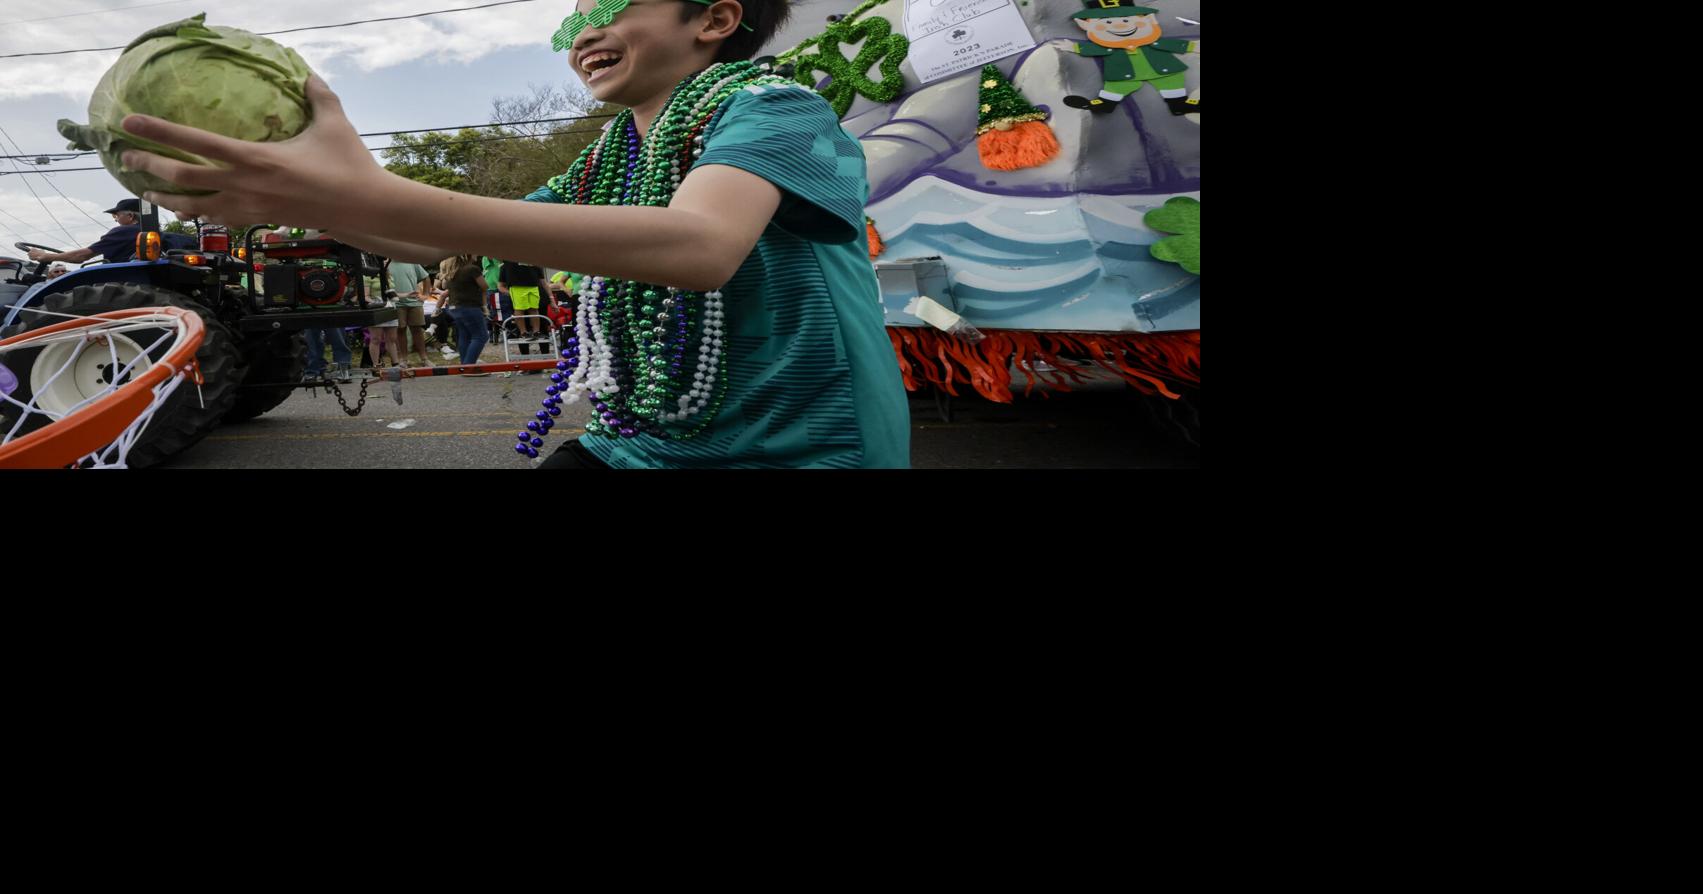 Gretna gets its first ItalianIrish parade finally Louisiana